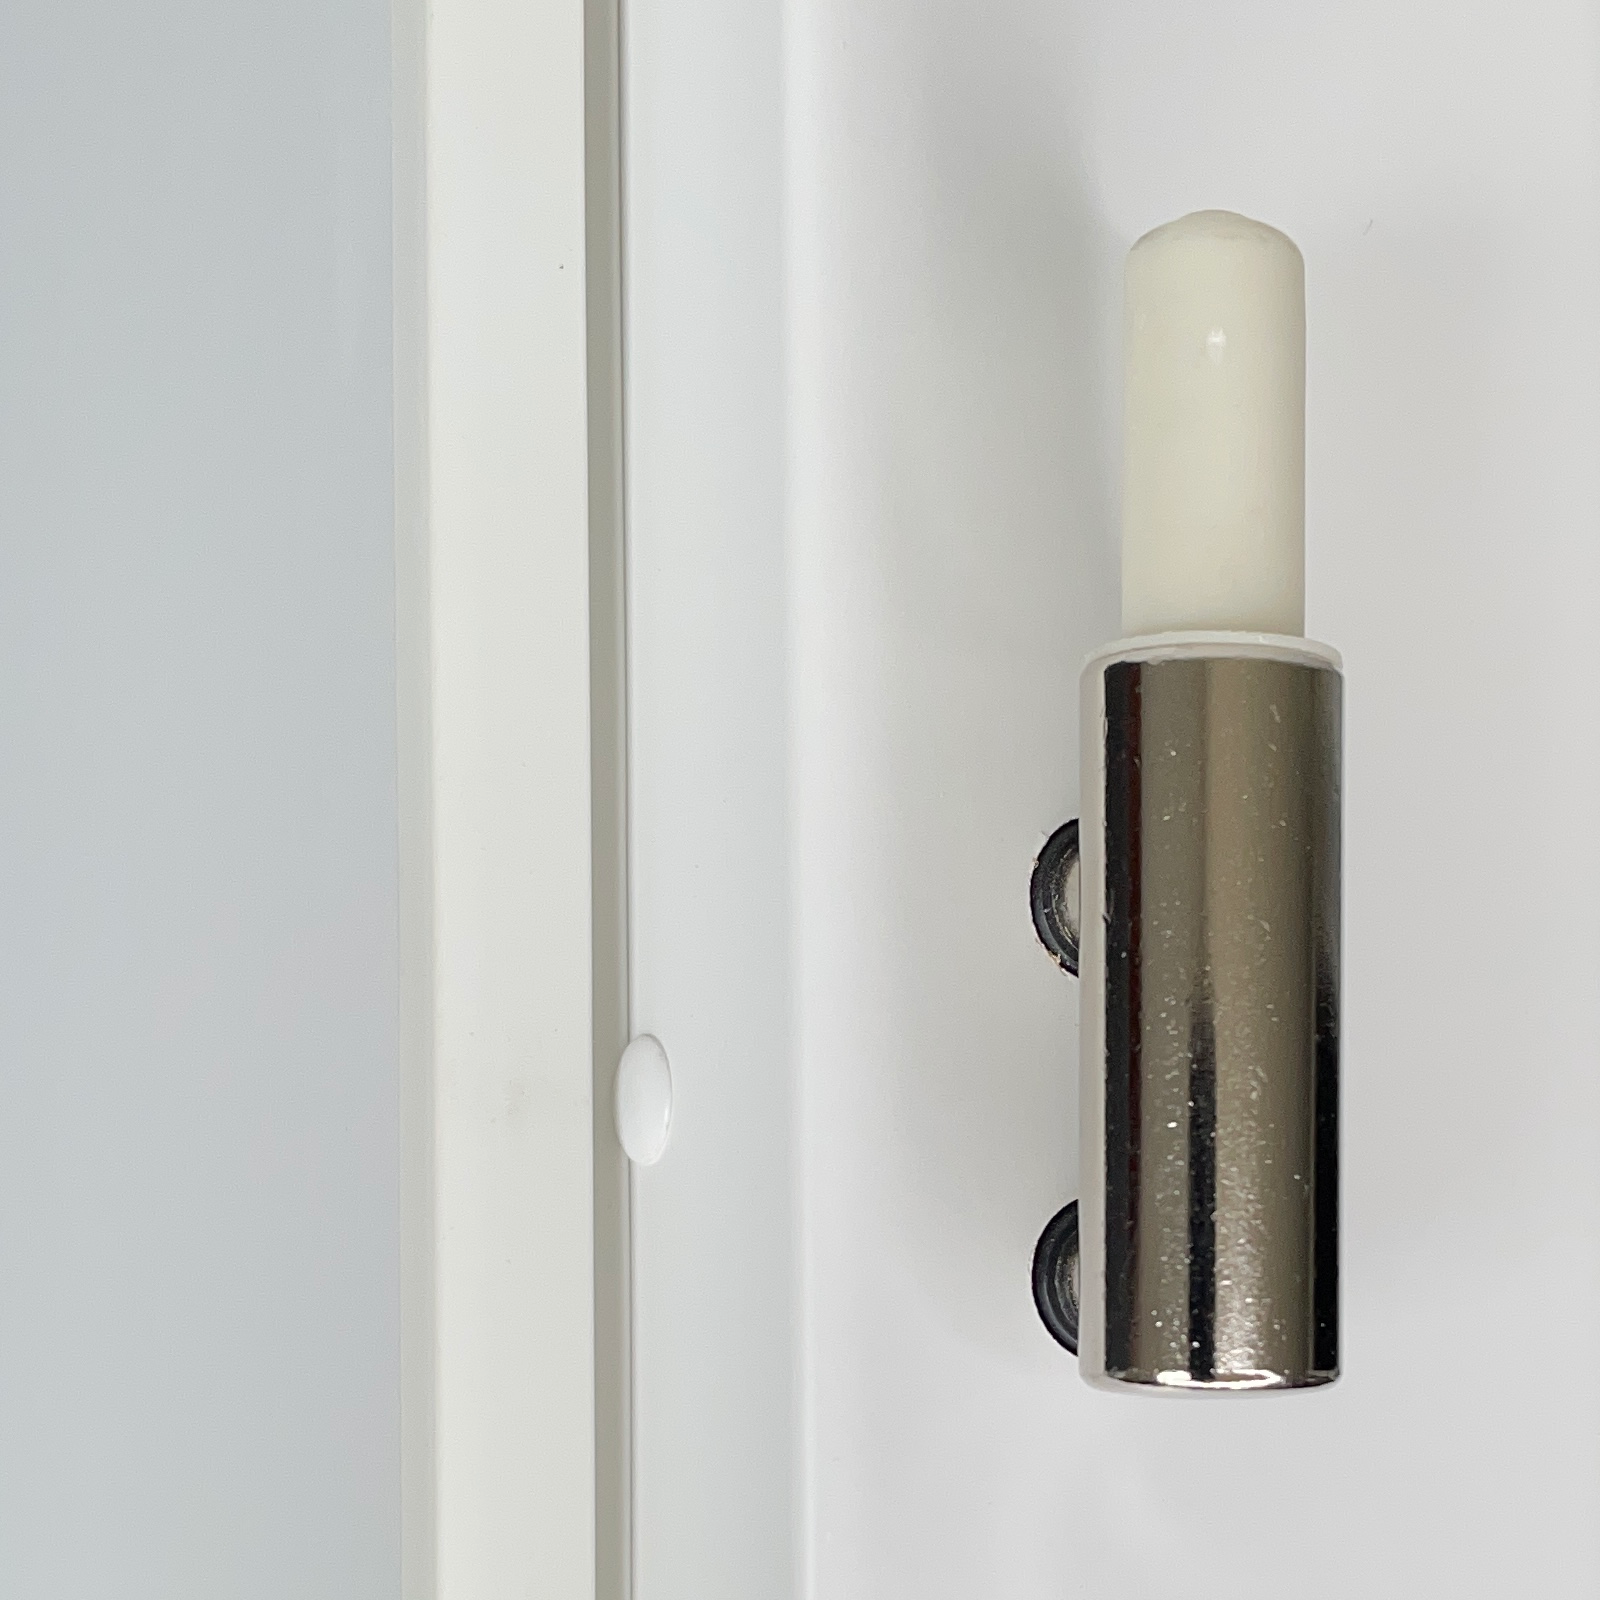 Zimmertür mit Zarge und Lichtausschnitt mit Sprossenrahmen klassisch brillant-weiß 4 Kassetten Designkante - Modell Stiltür K43LASPK